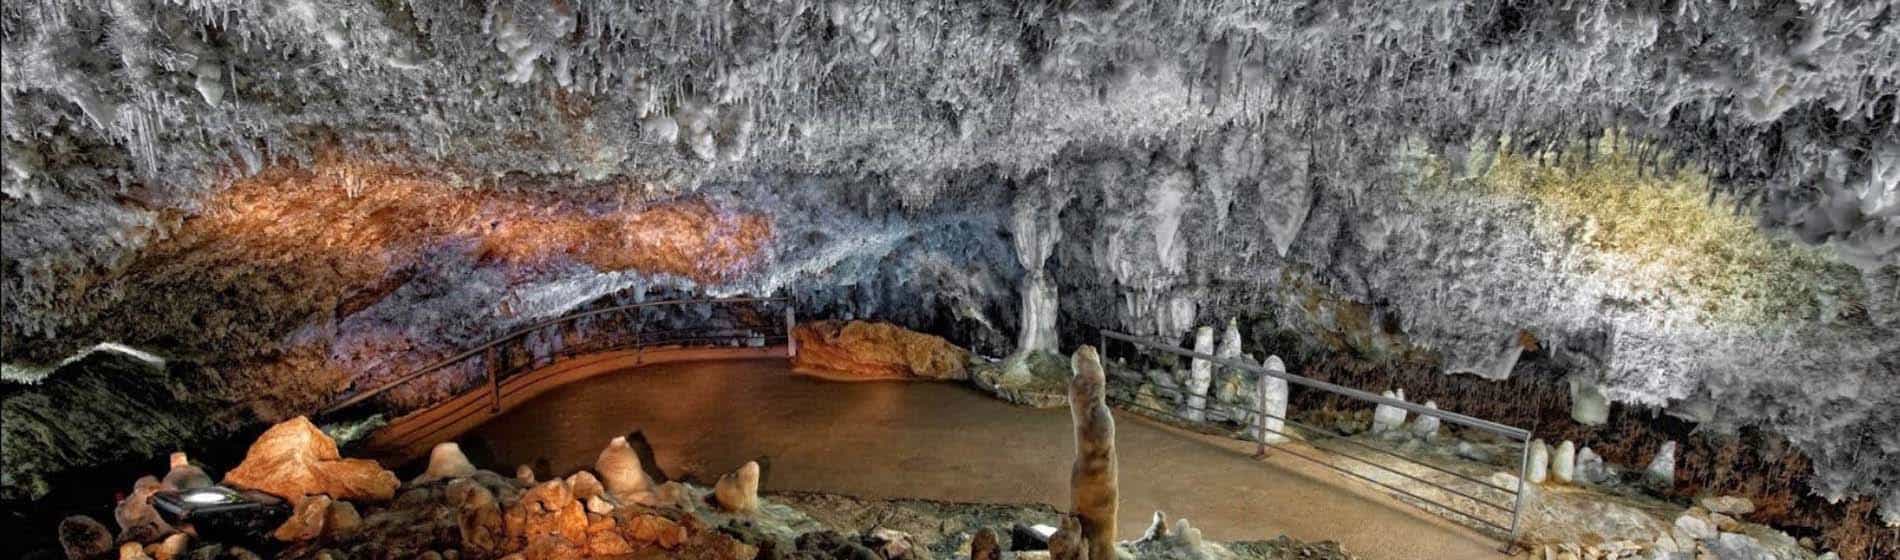 Cantabria, Vistas del interior de la Cueva del Soplao